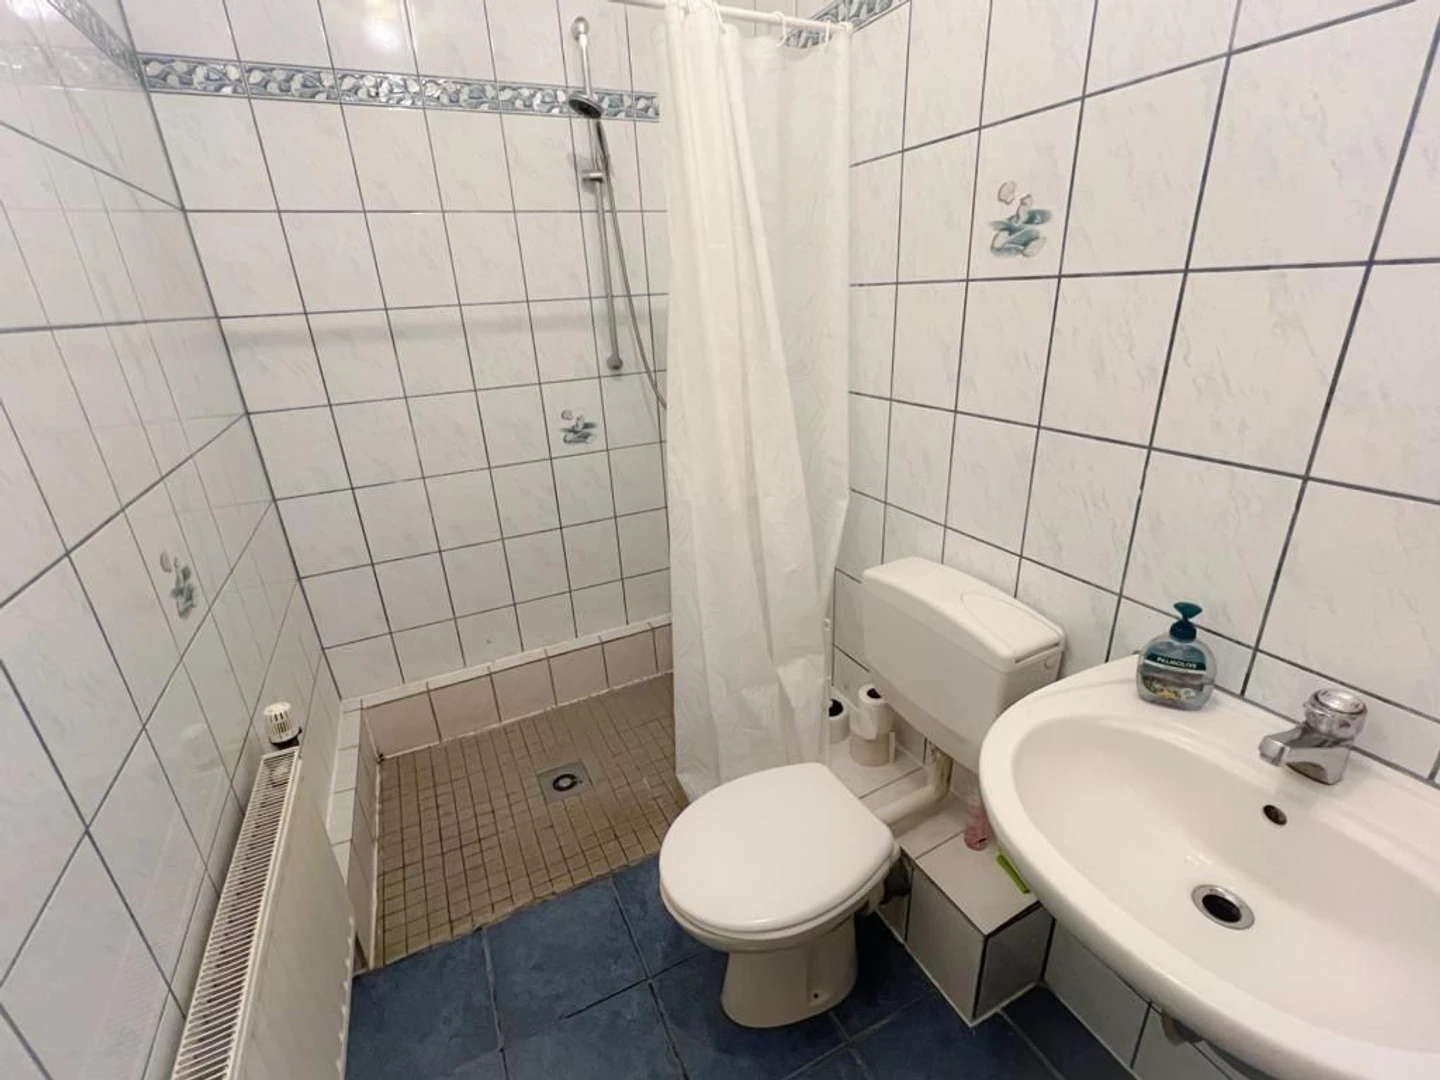 Cheap private room in Hagen